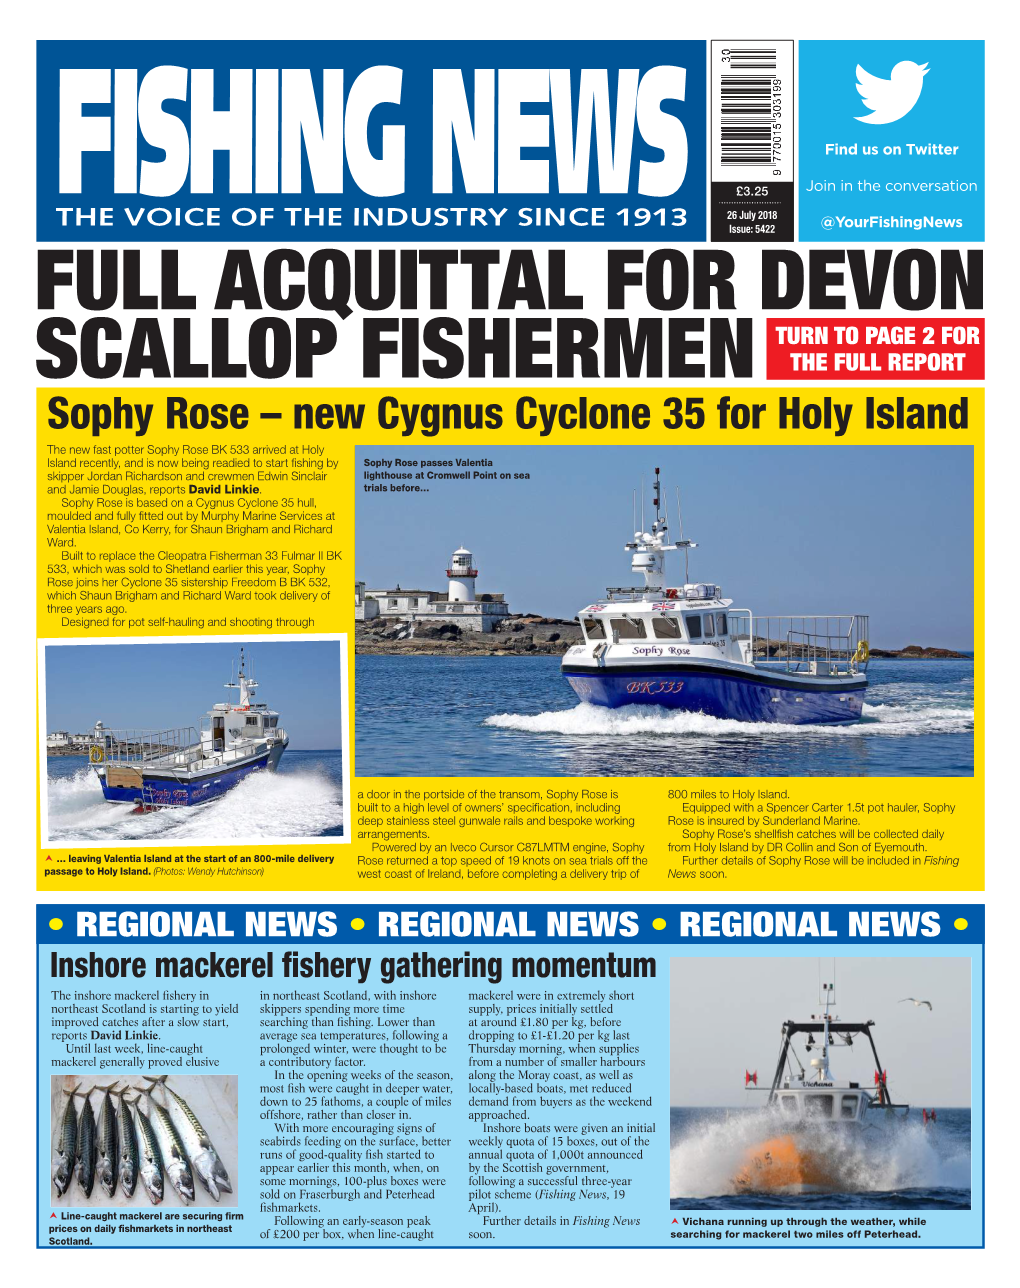 Full Acquittal for Devon Scallop Fishermen